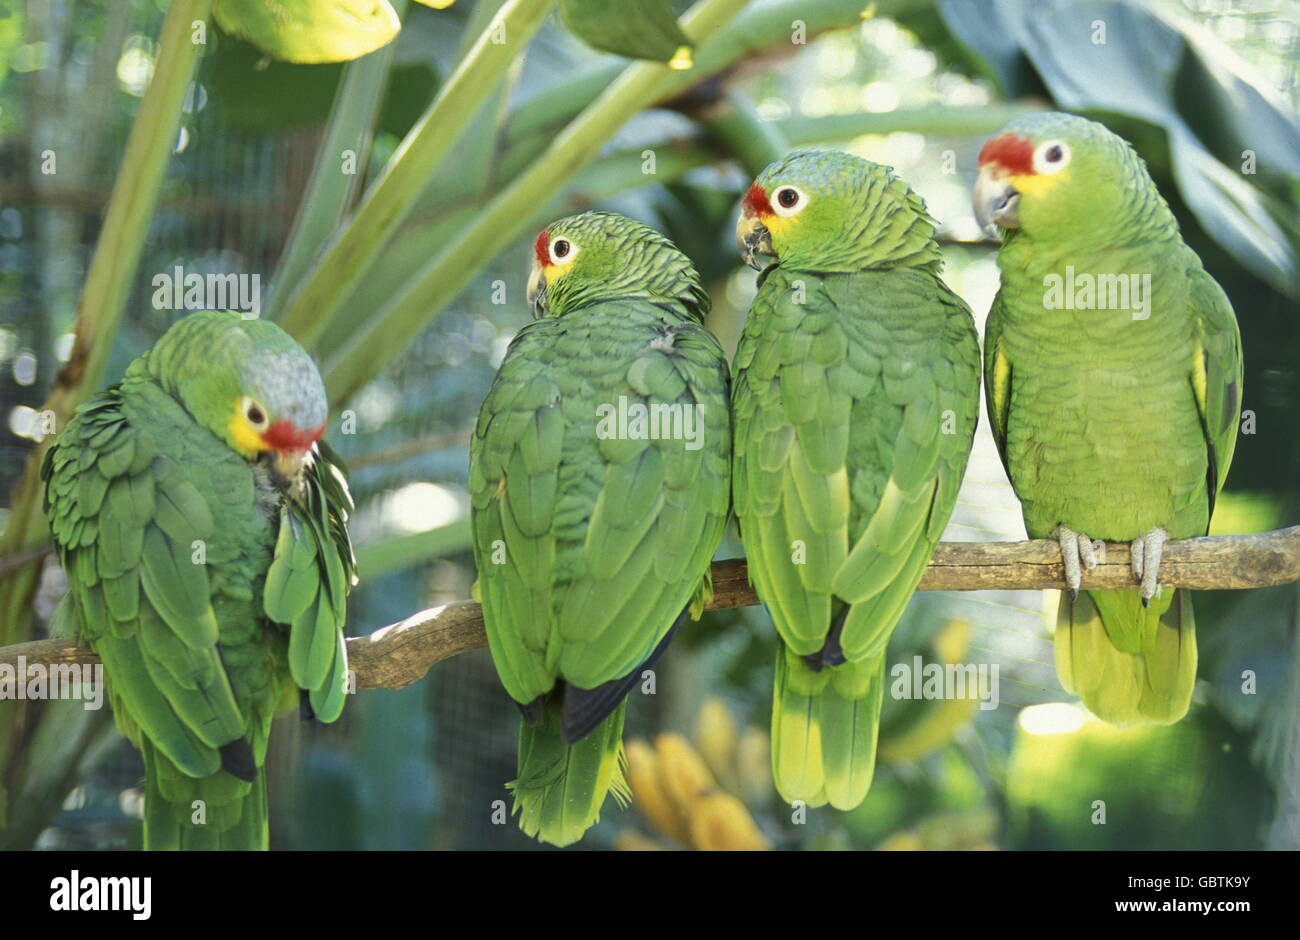 Uccelli dell'honduras immagini e fotografie stock ad alta risoluzione -  Pagina 2 - Alamy